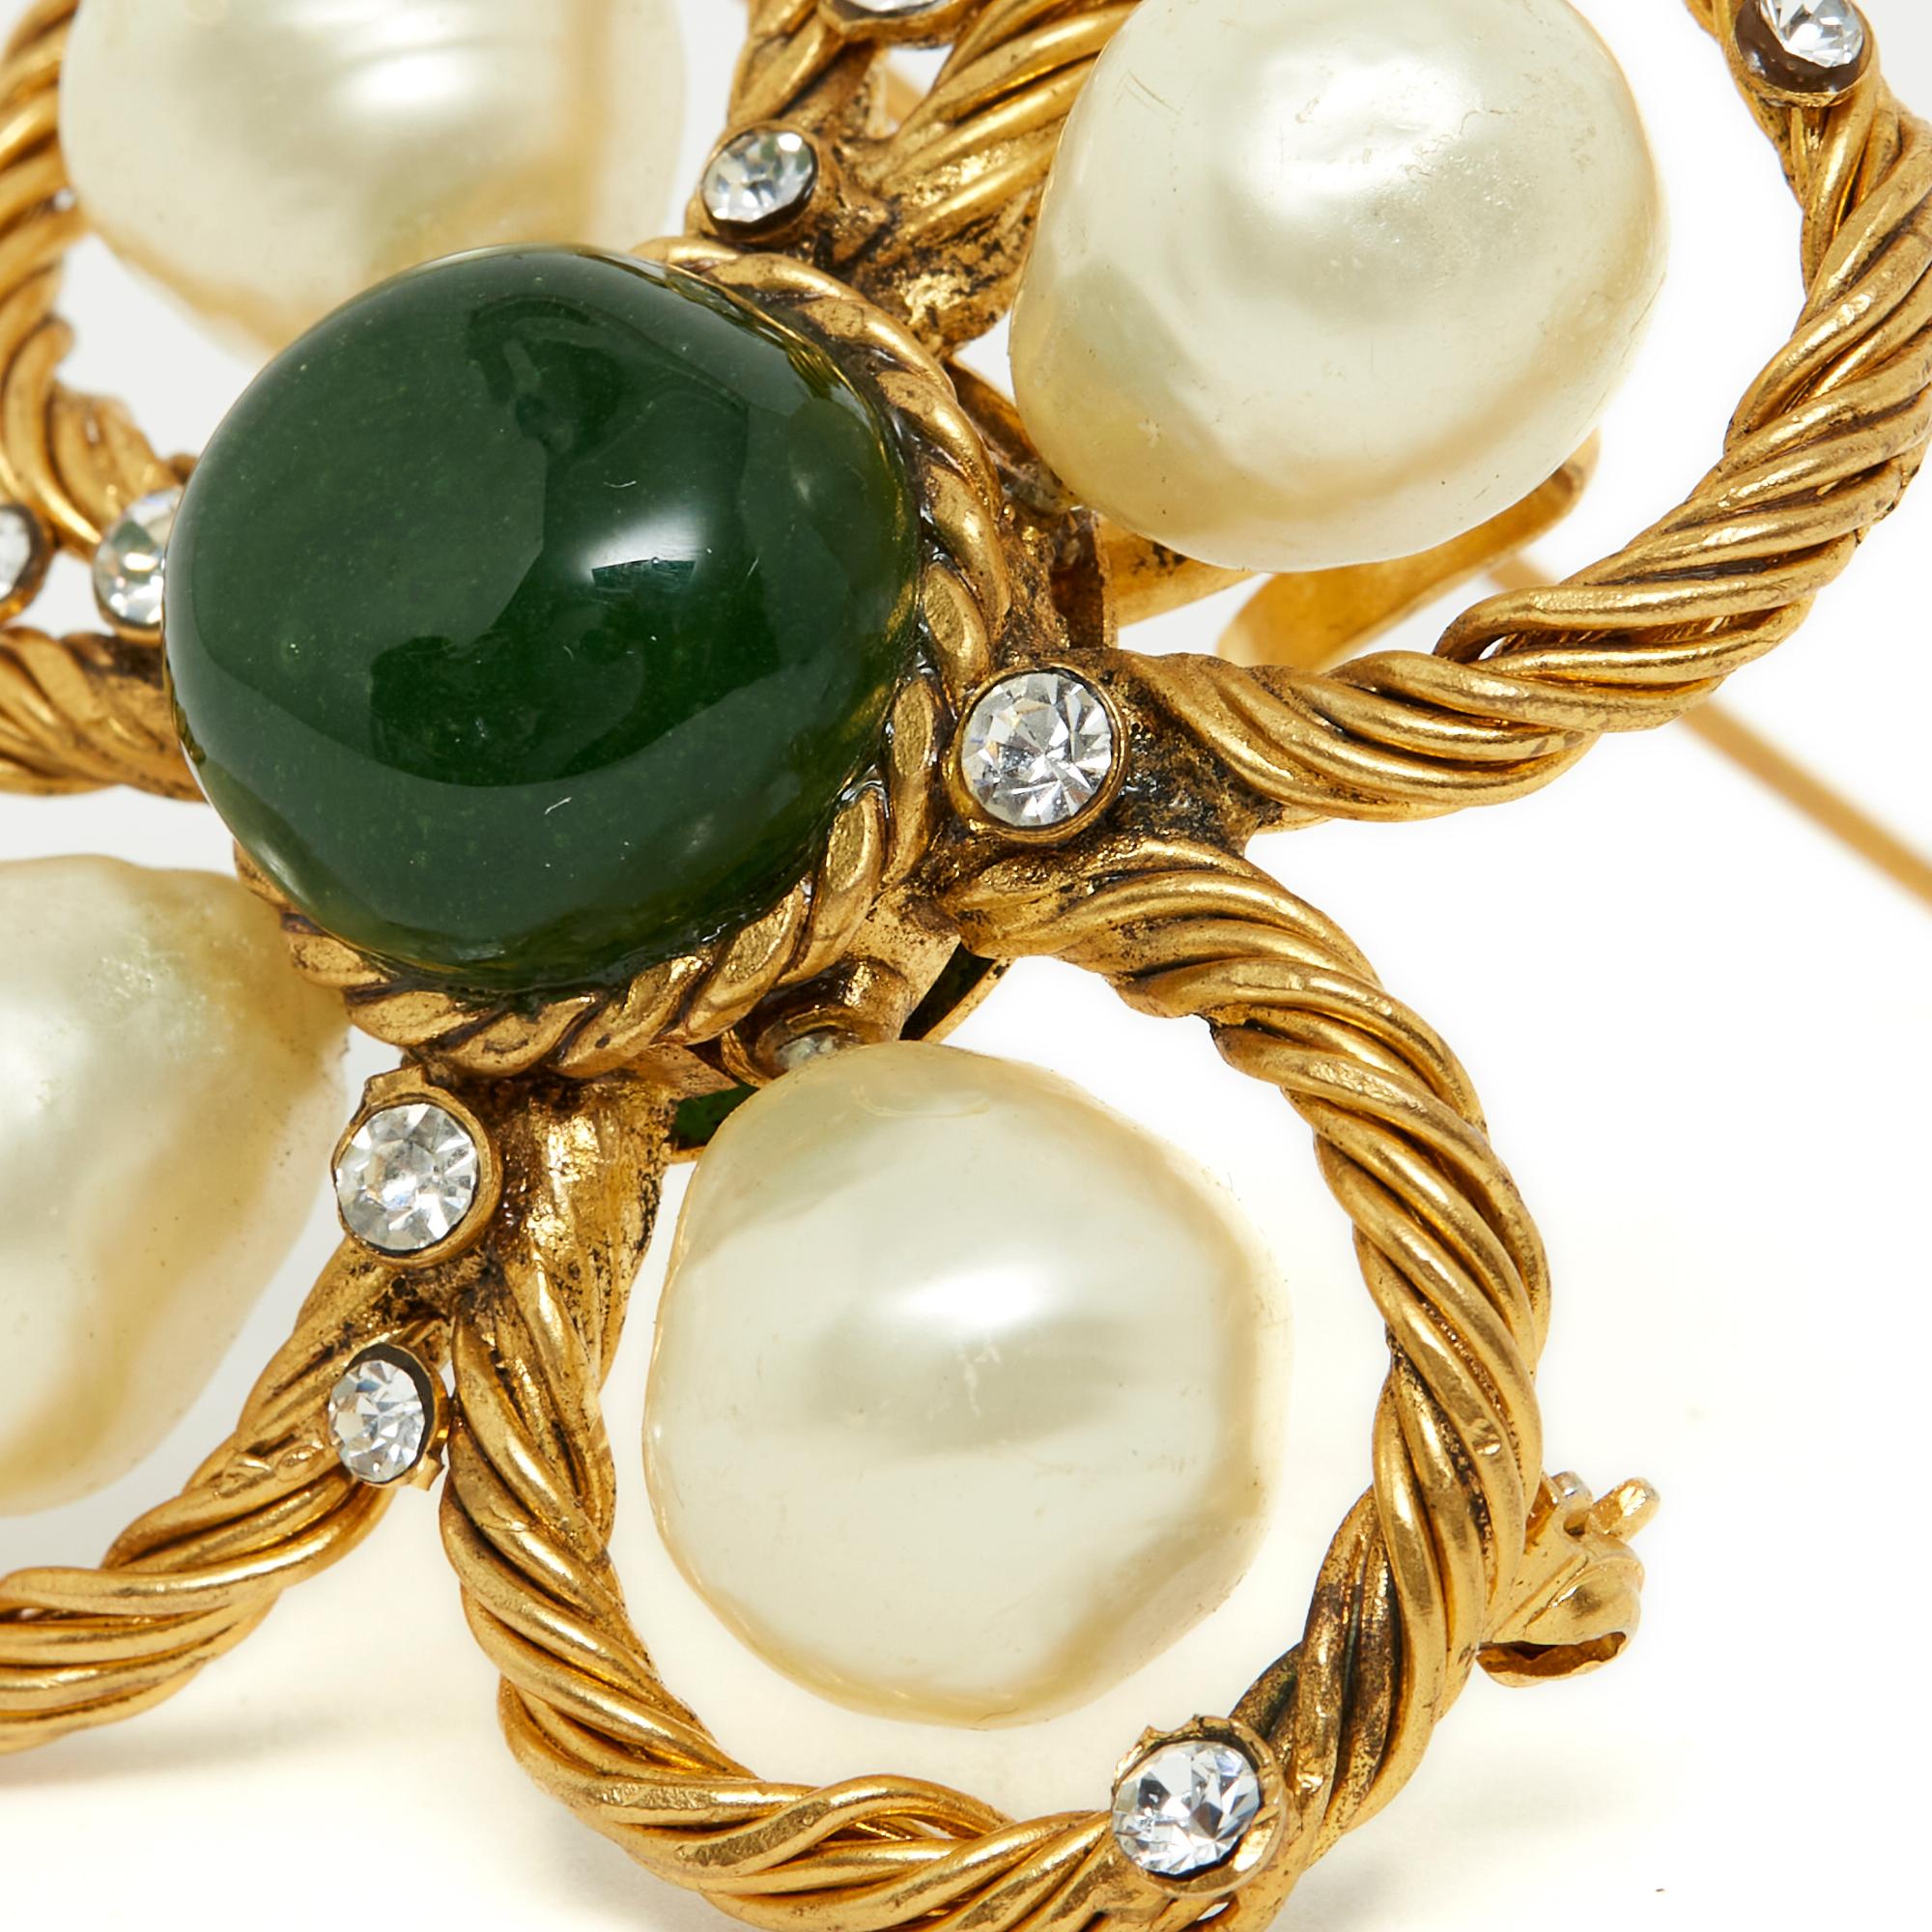 Broche Chanel Haute Couture par Gripoix, probablement vers 1995 en métal doré, perles de verre nacré irrégulières, strass blancs et cabochon de verre vert, munie d'une épingle à broche et d'une anse pour être suspendue à un collier, un décolleté,